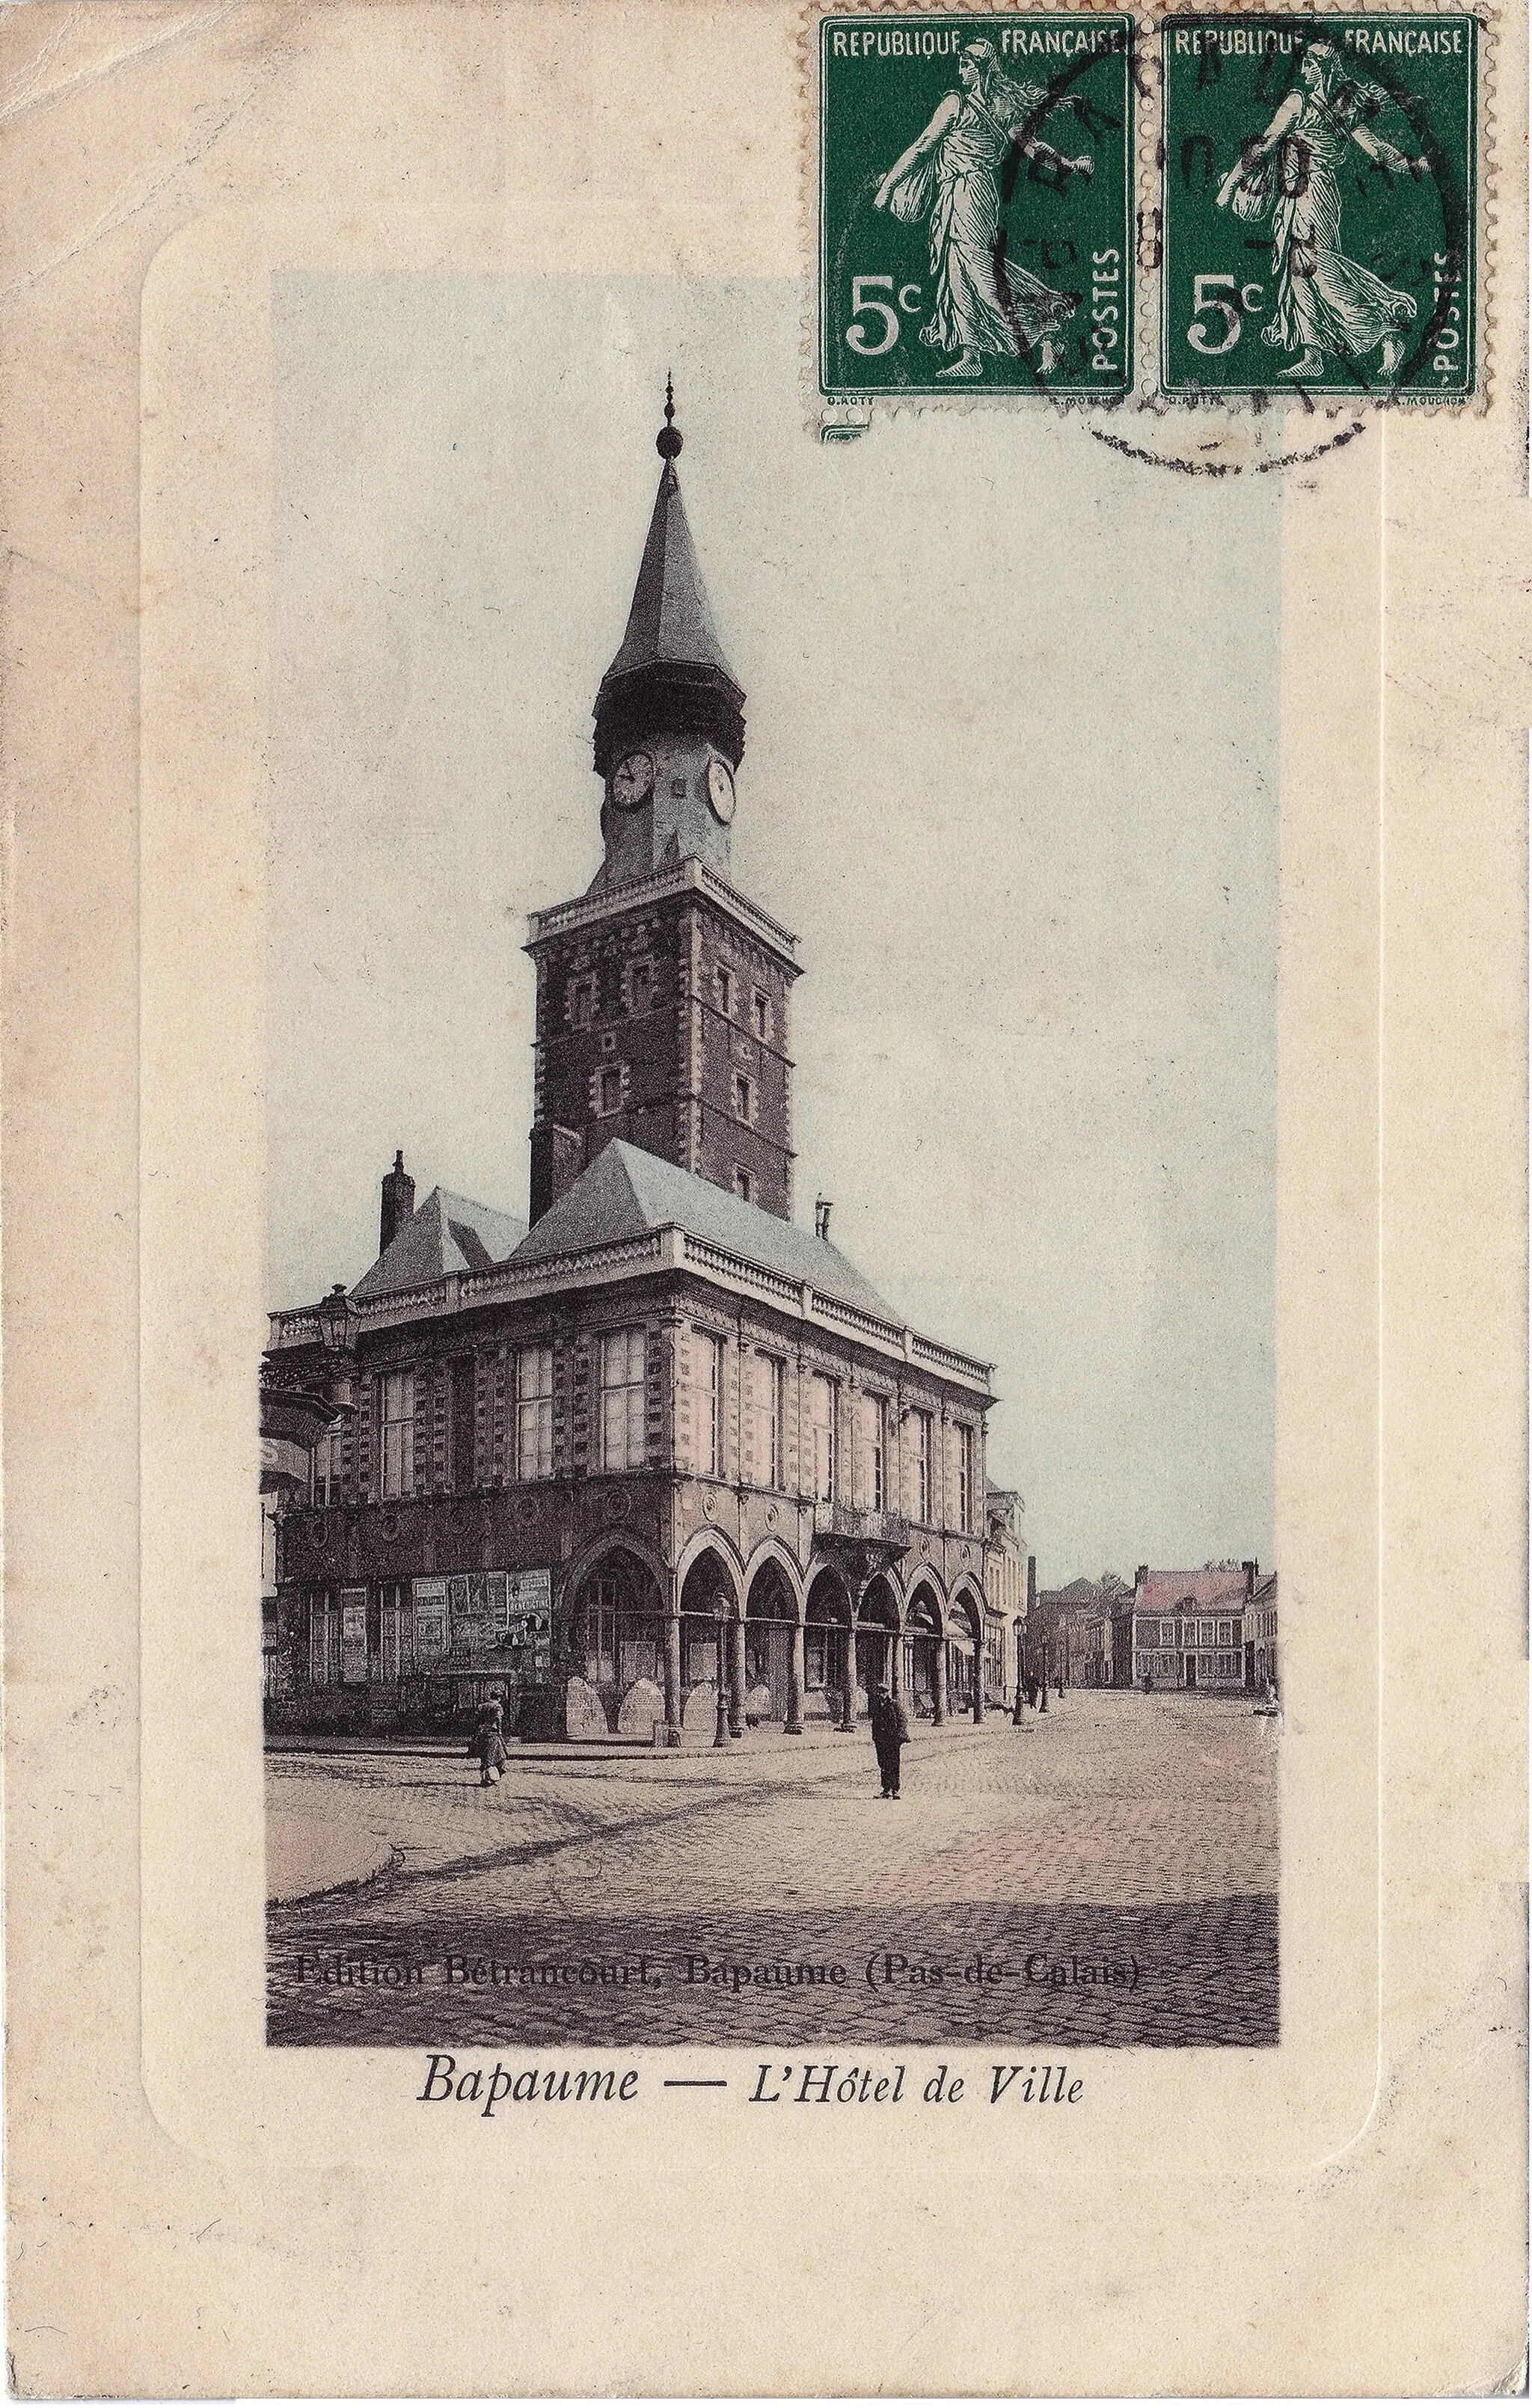 Photo showing: Bapaume (France - département du Pas-de-Calais) — L'Hôtel de Ville avant la Première Guerre Mondiale .